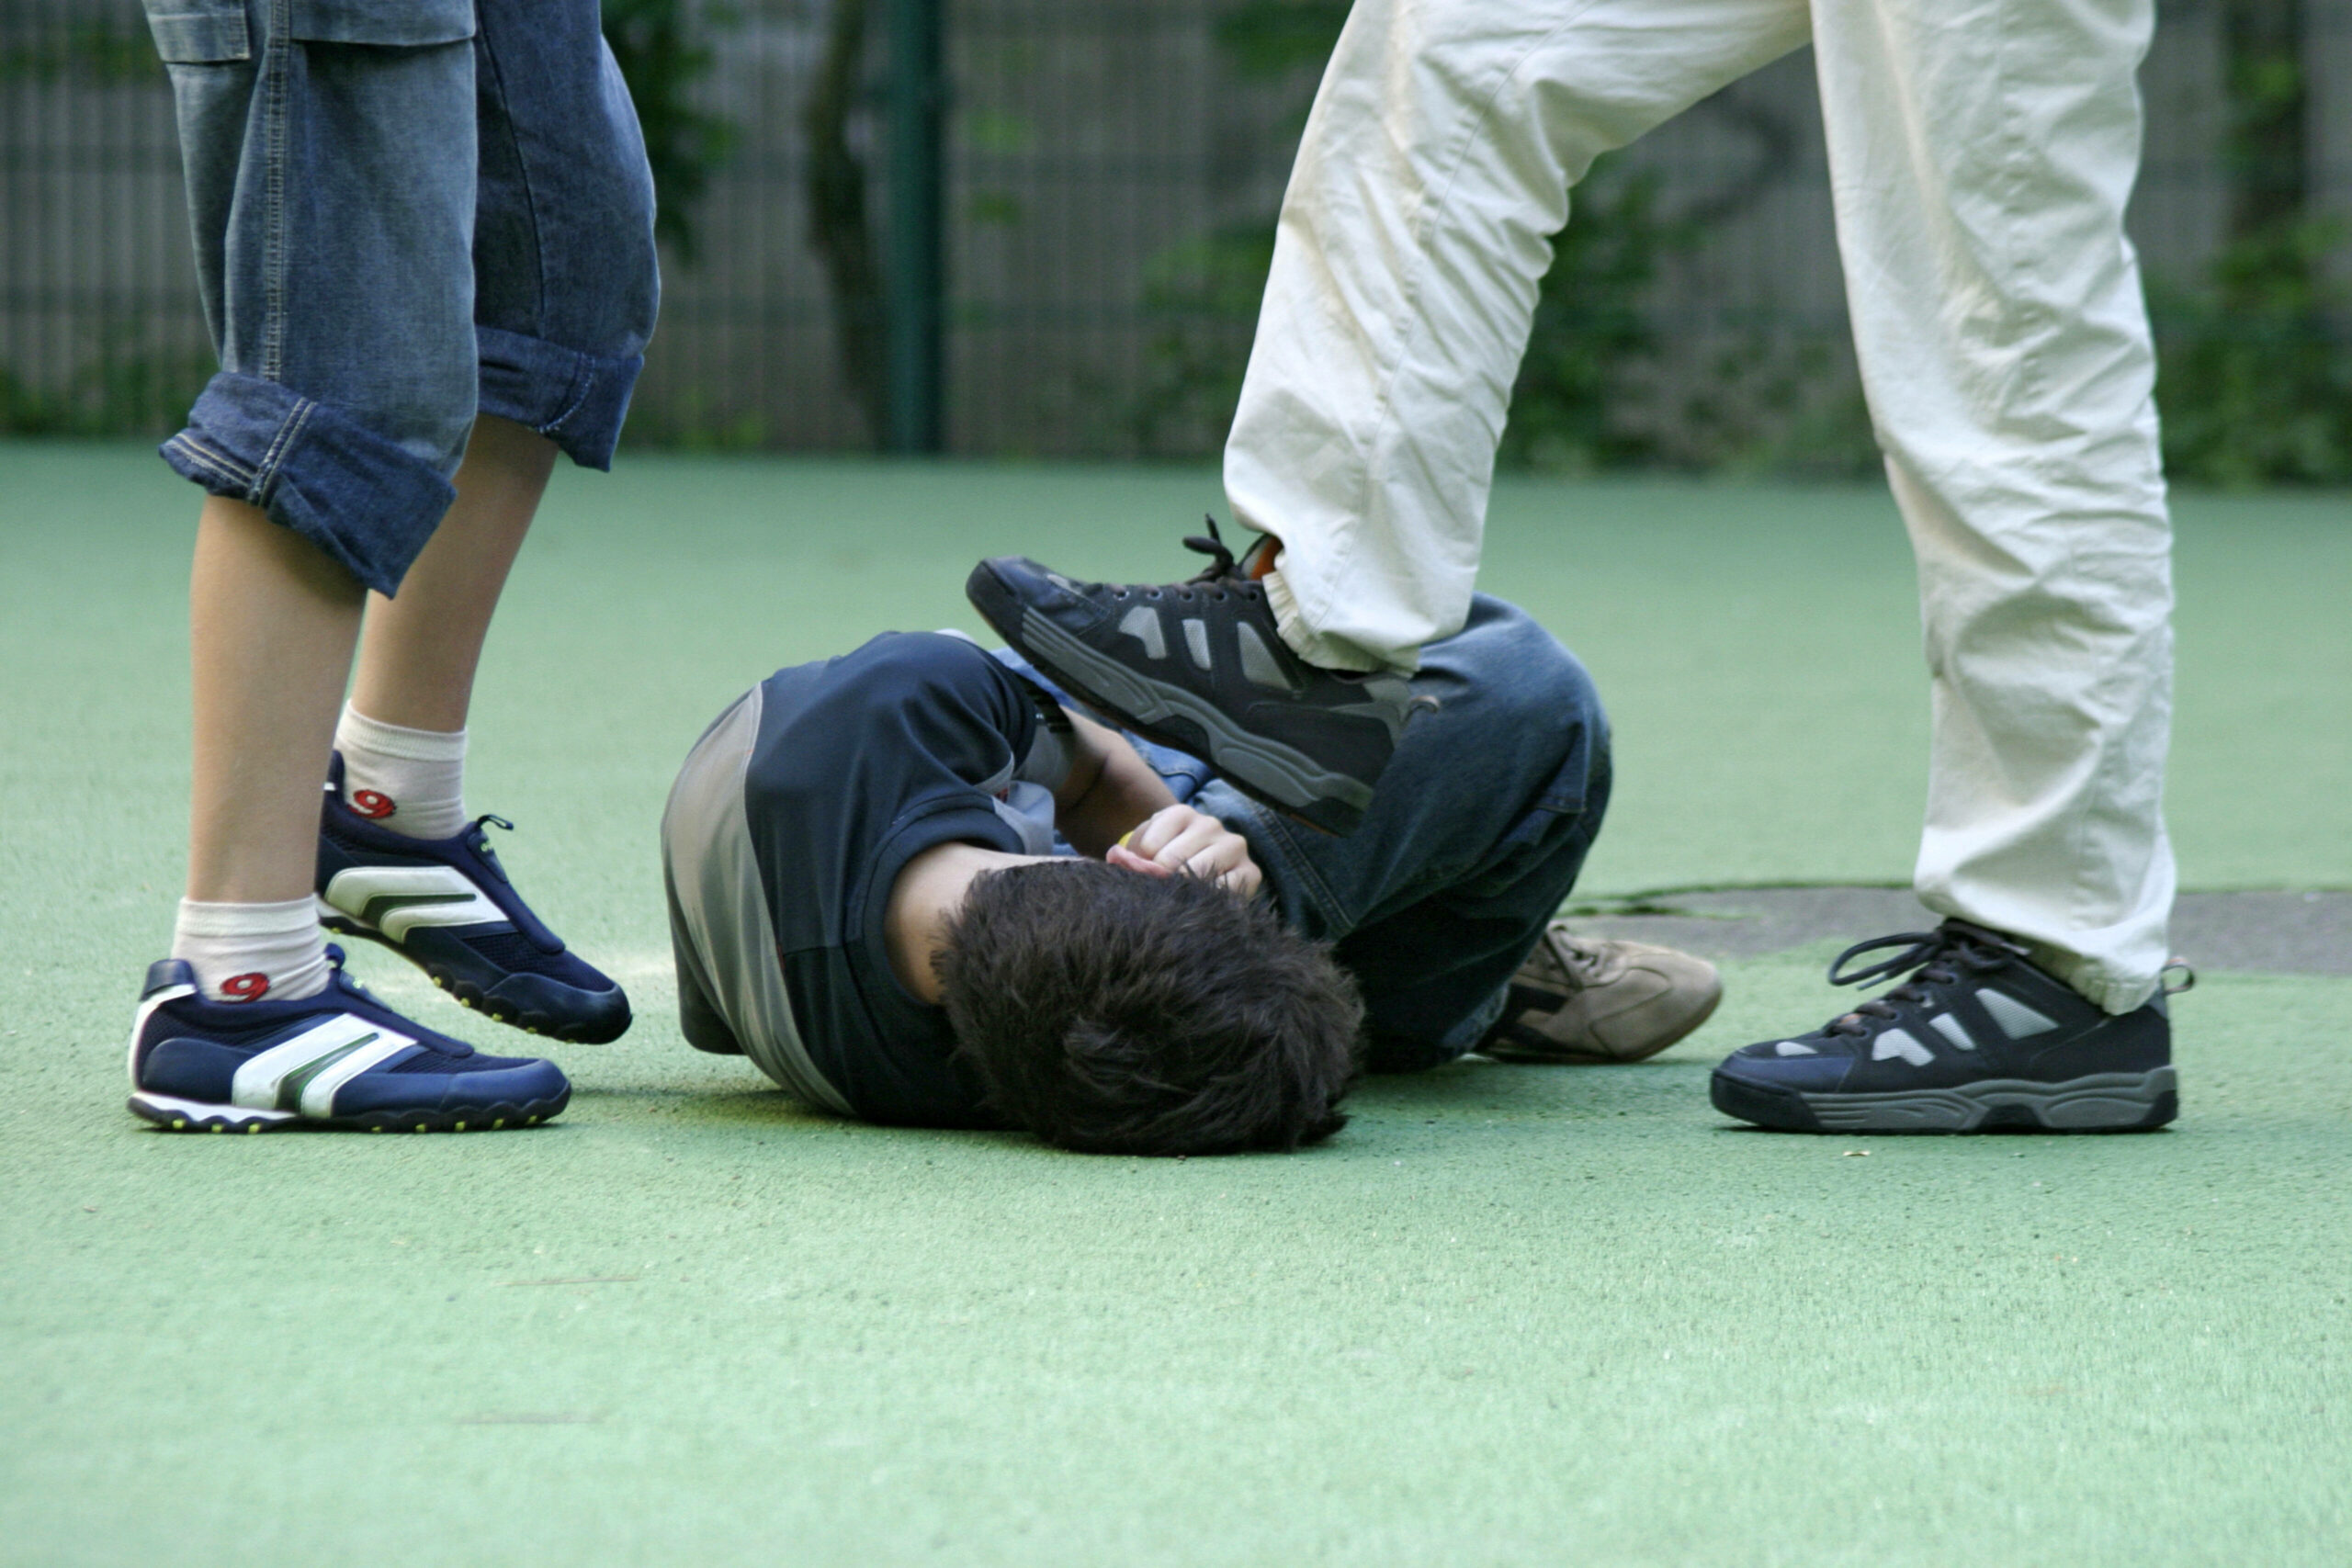 Ein Jugendlicher wird von Gleichaltrigen verprügelt (Symbolbild).